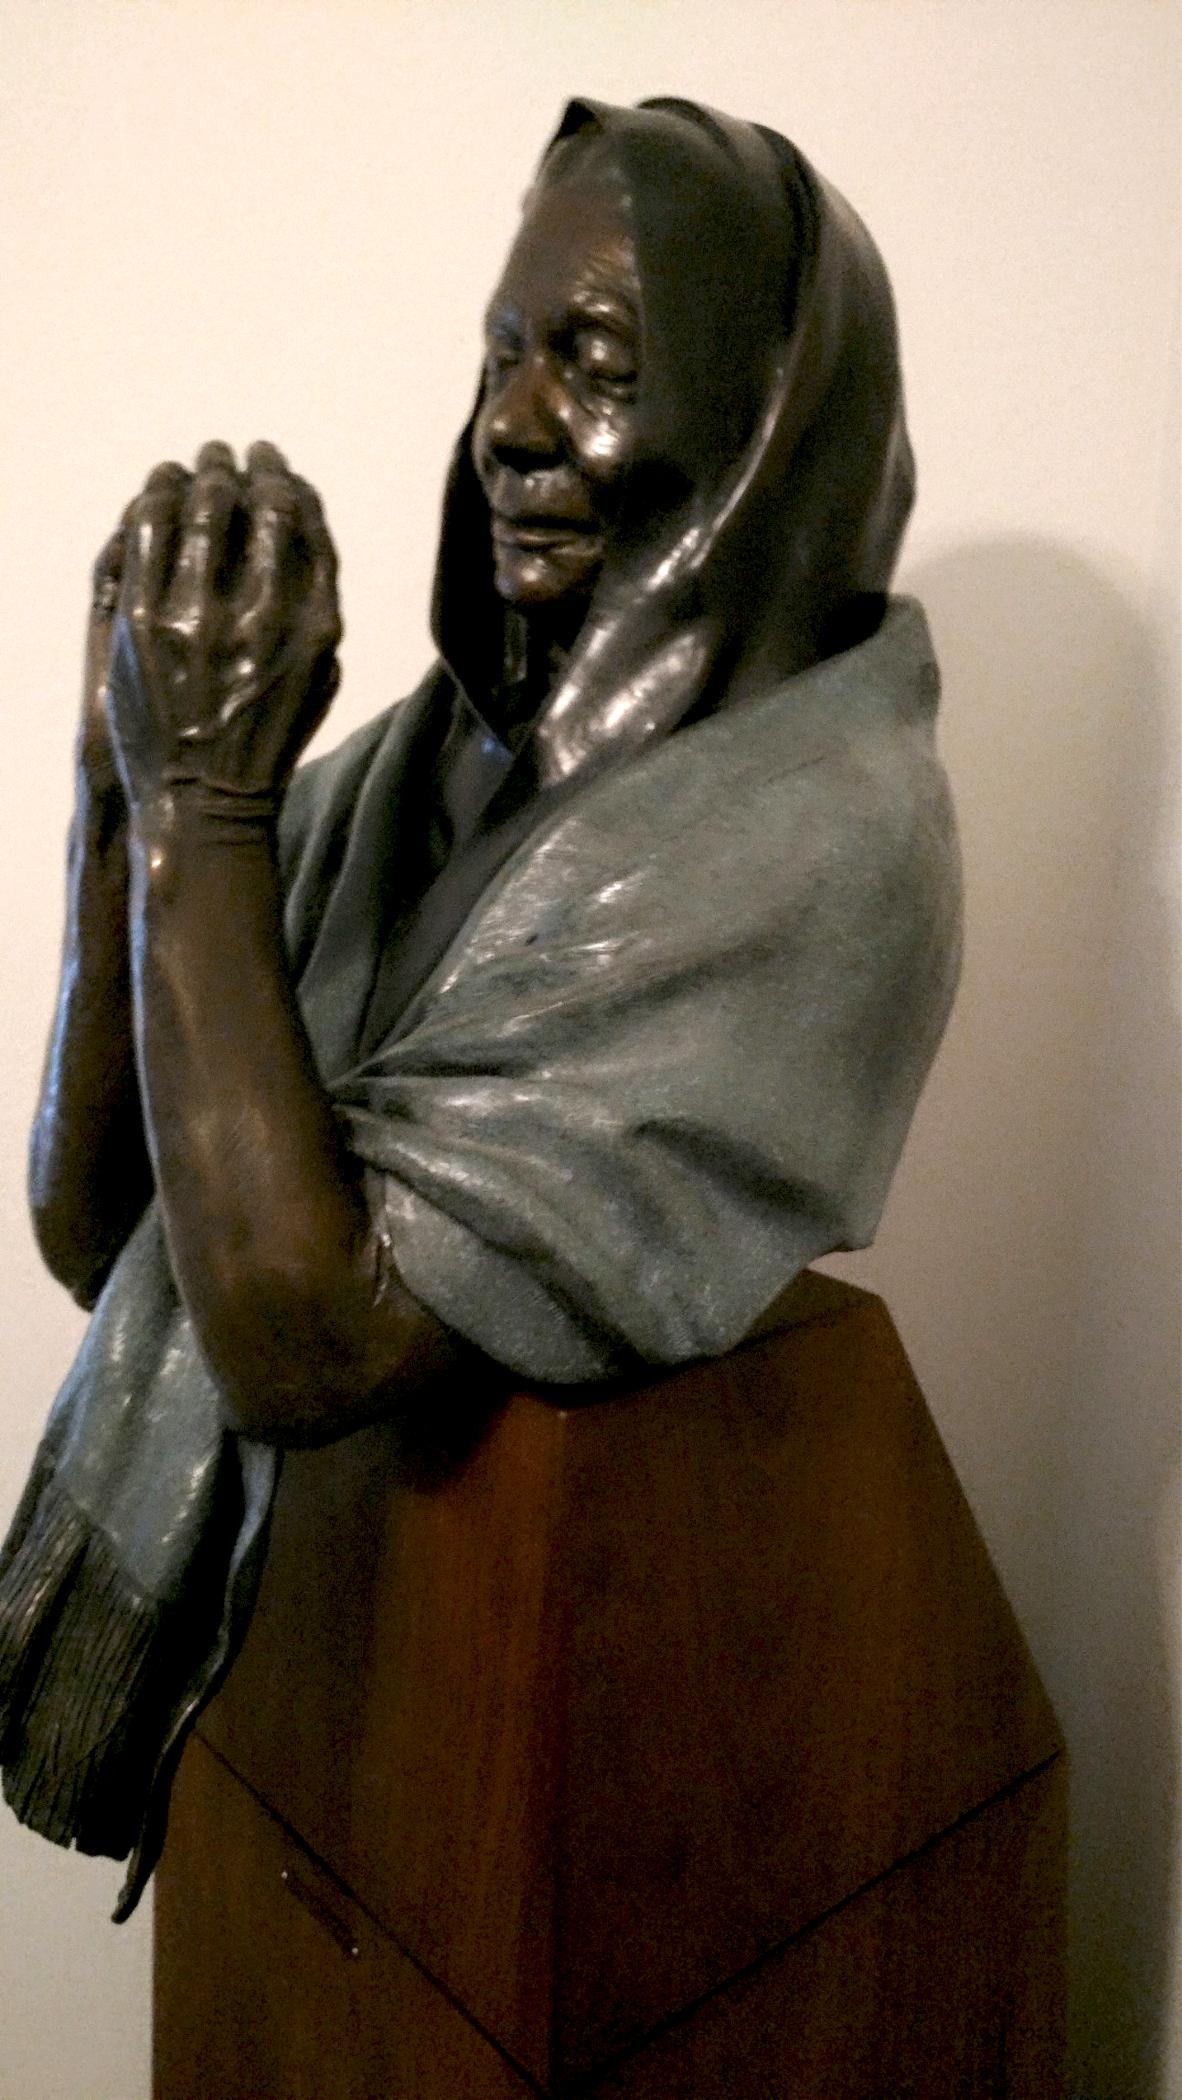 Le chemin des prières par Denny Haskew
Buste féminin figuratif sur socle personnalisé 66x16x20